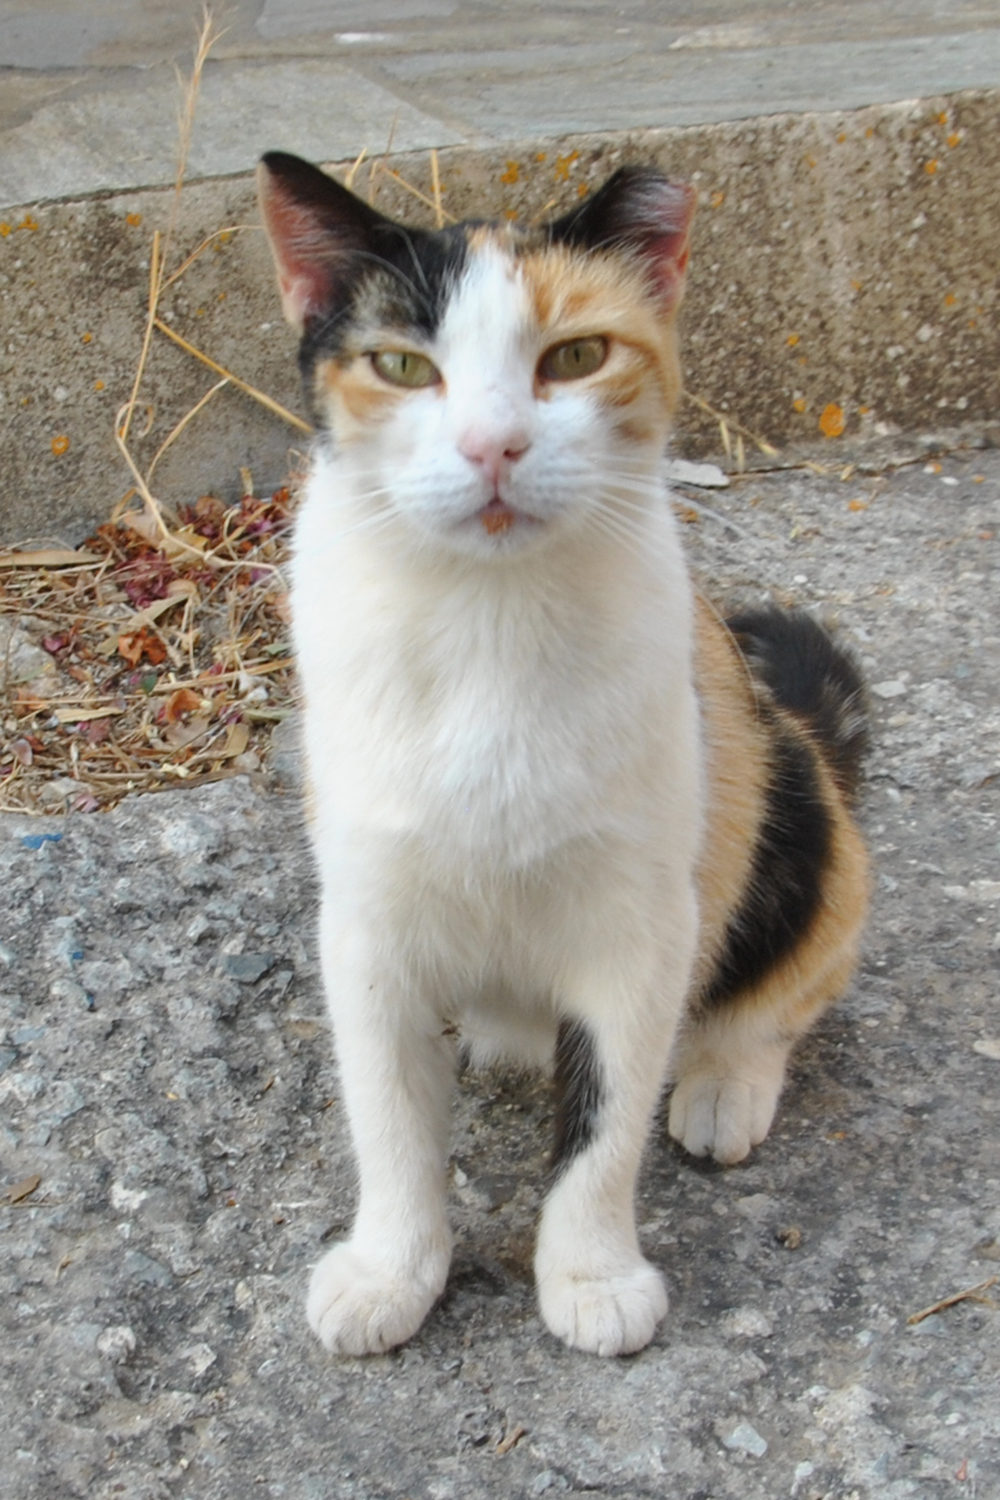 Adopt a cat - Website of adoptacat!